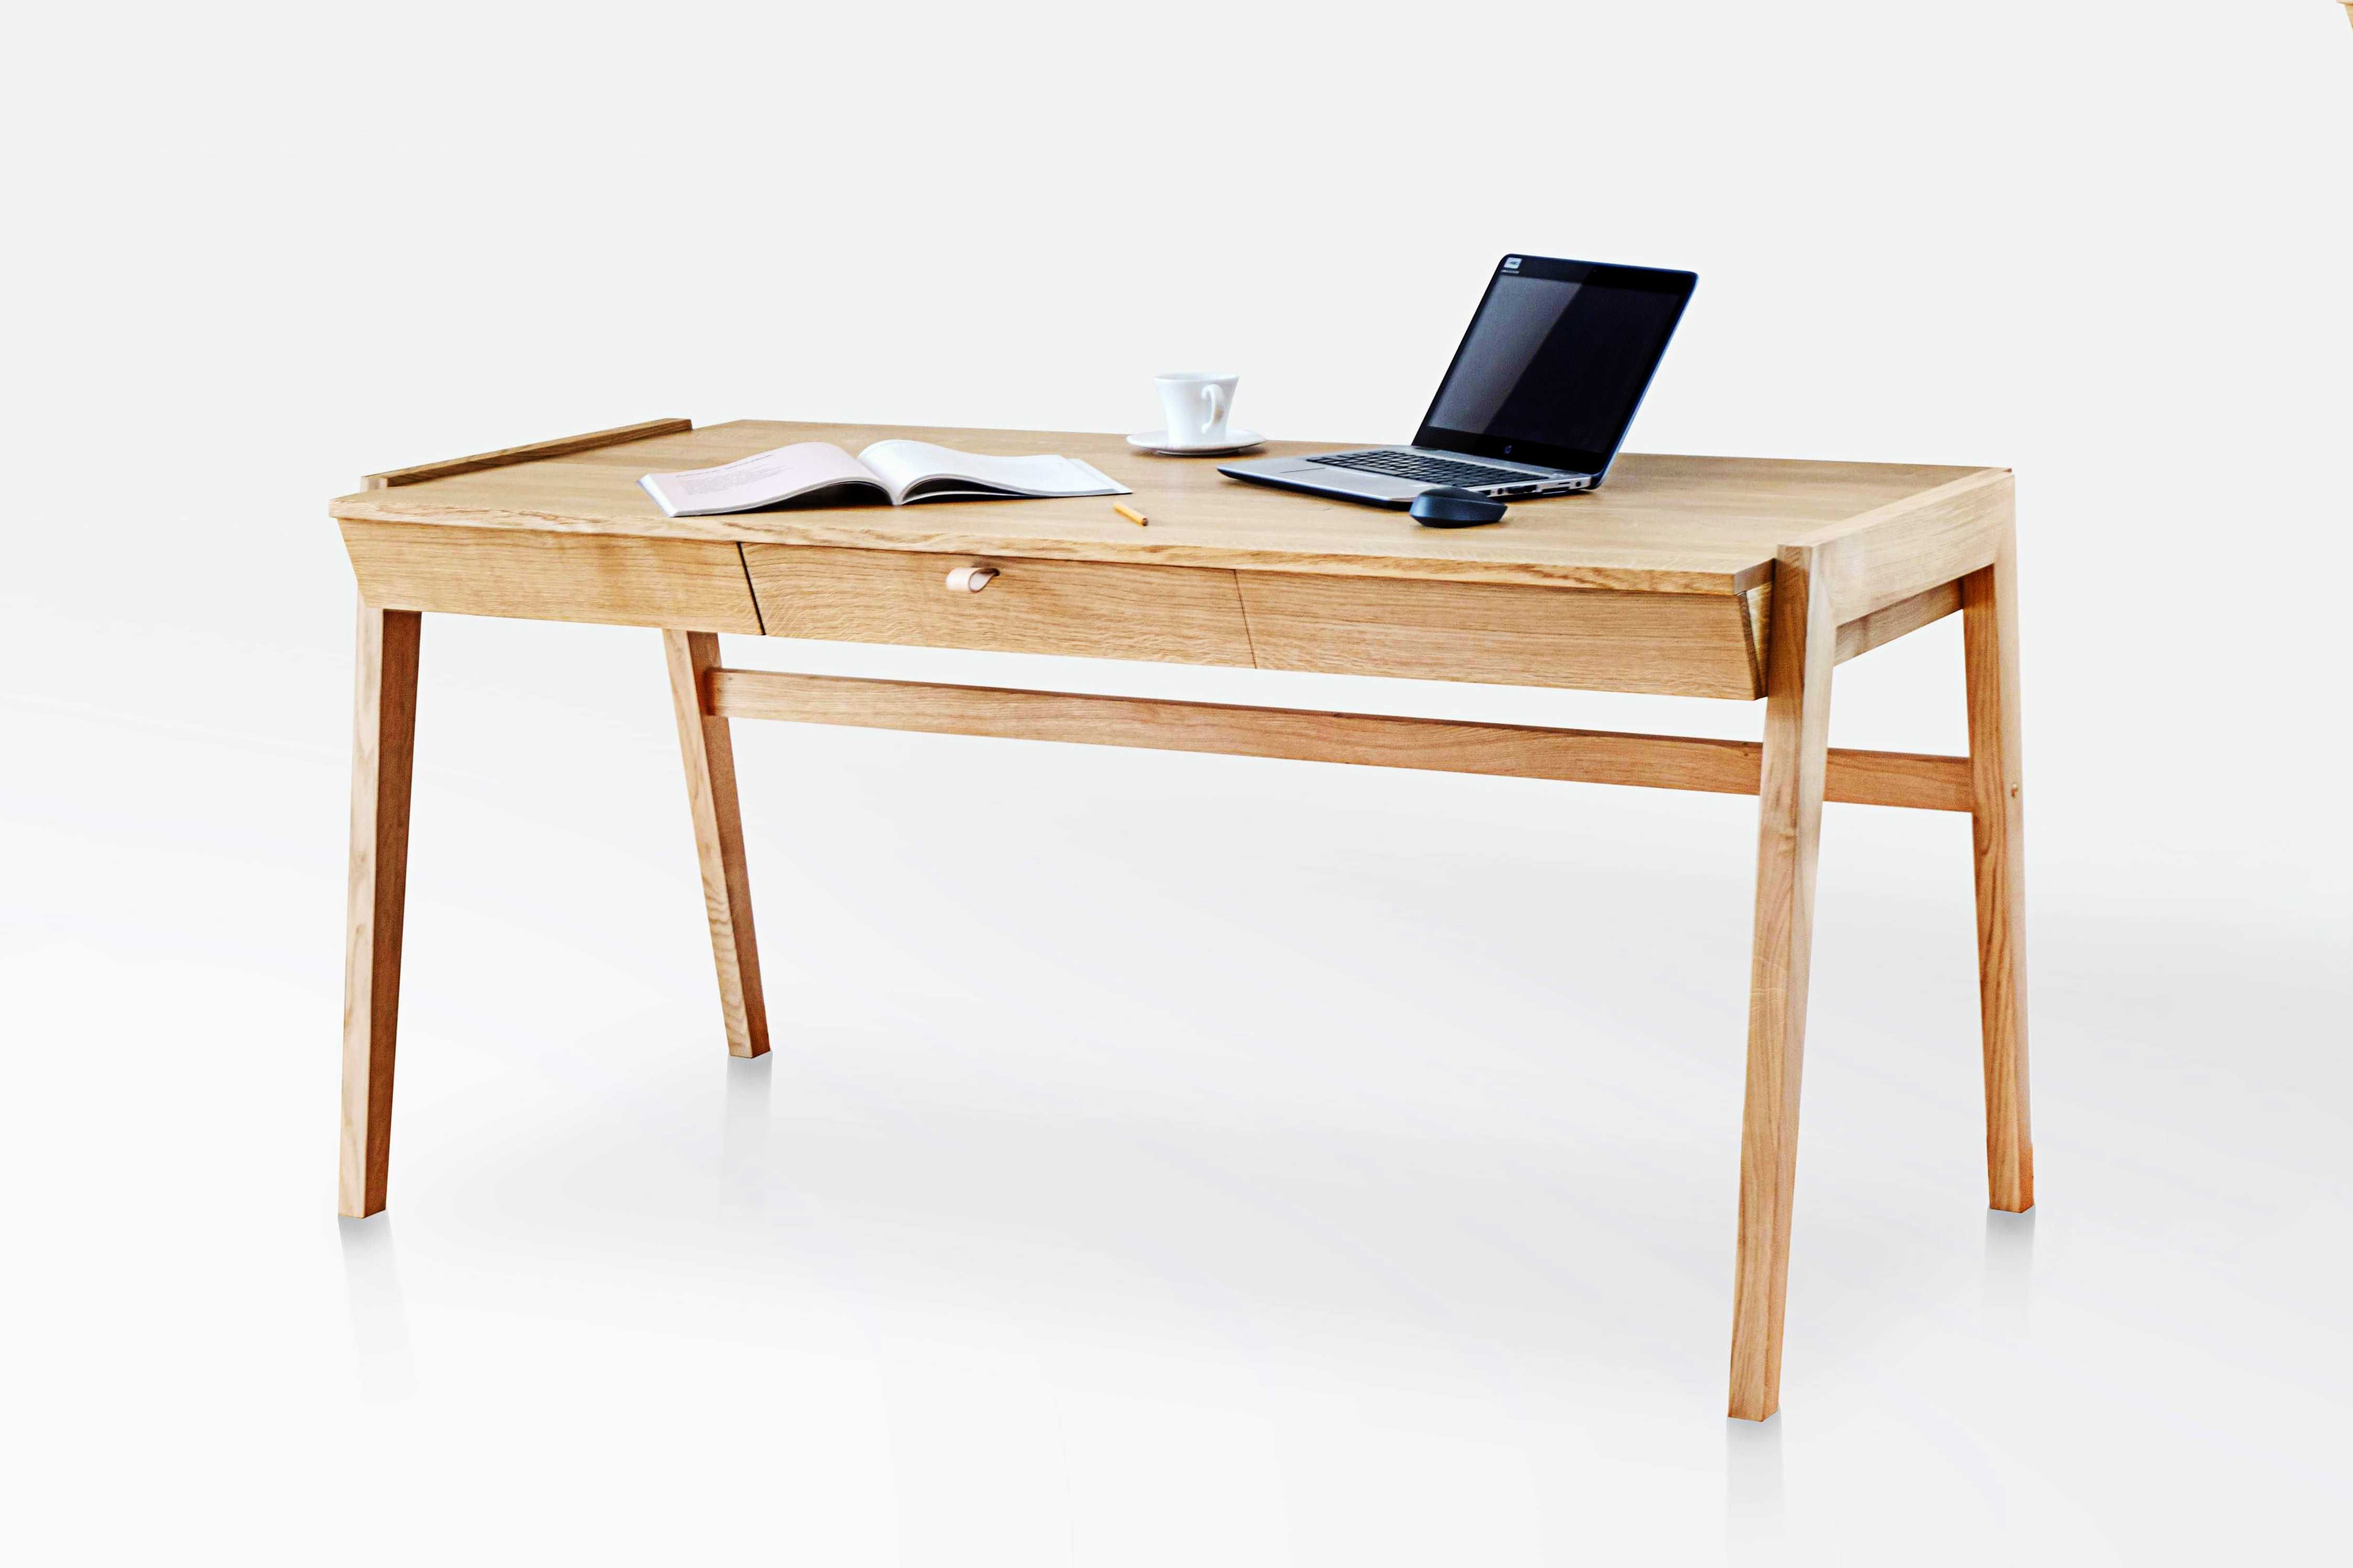 Biurko ręcznie wykonane z dębu - idealne rozwiązanie do domowego biura